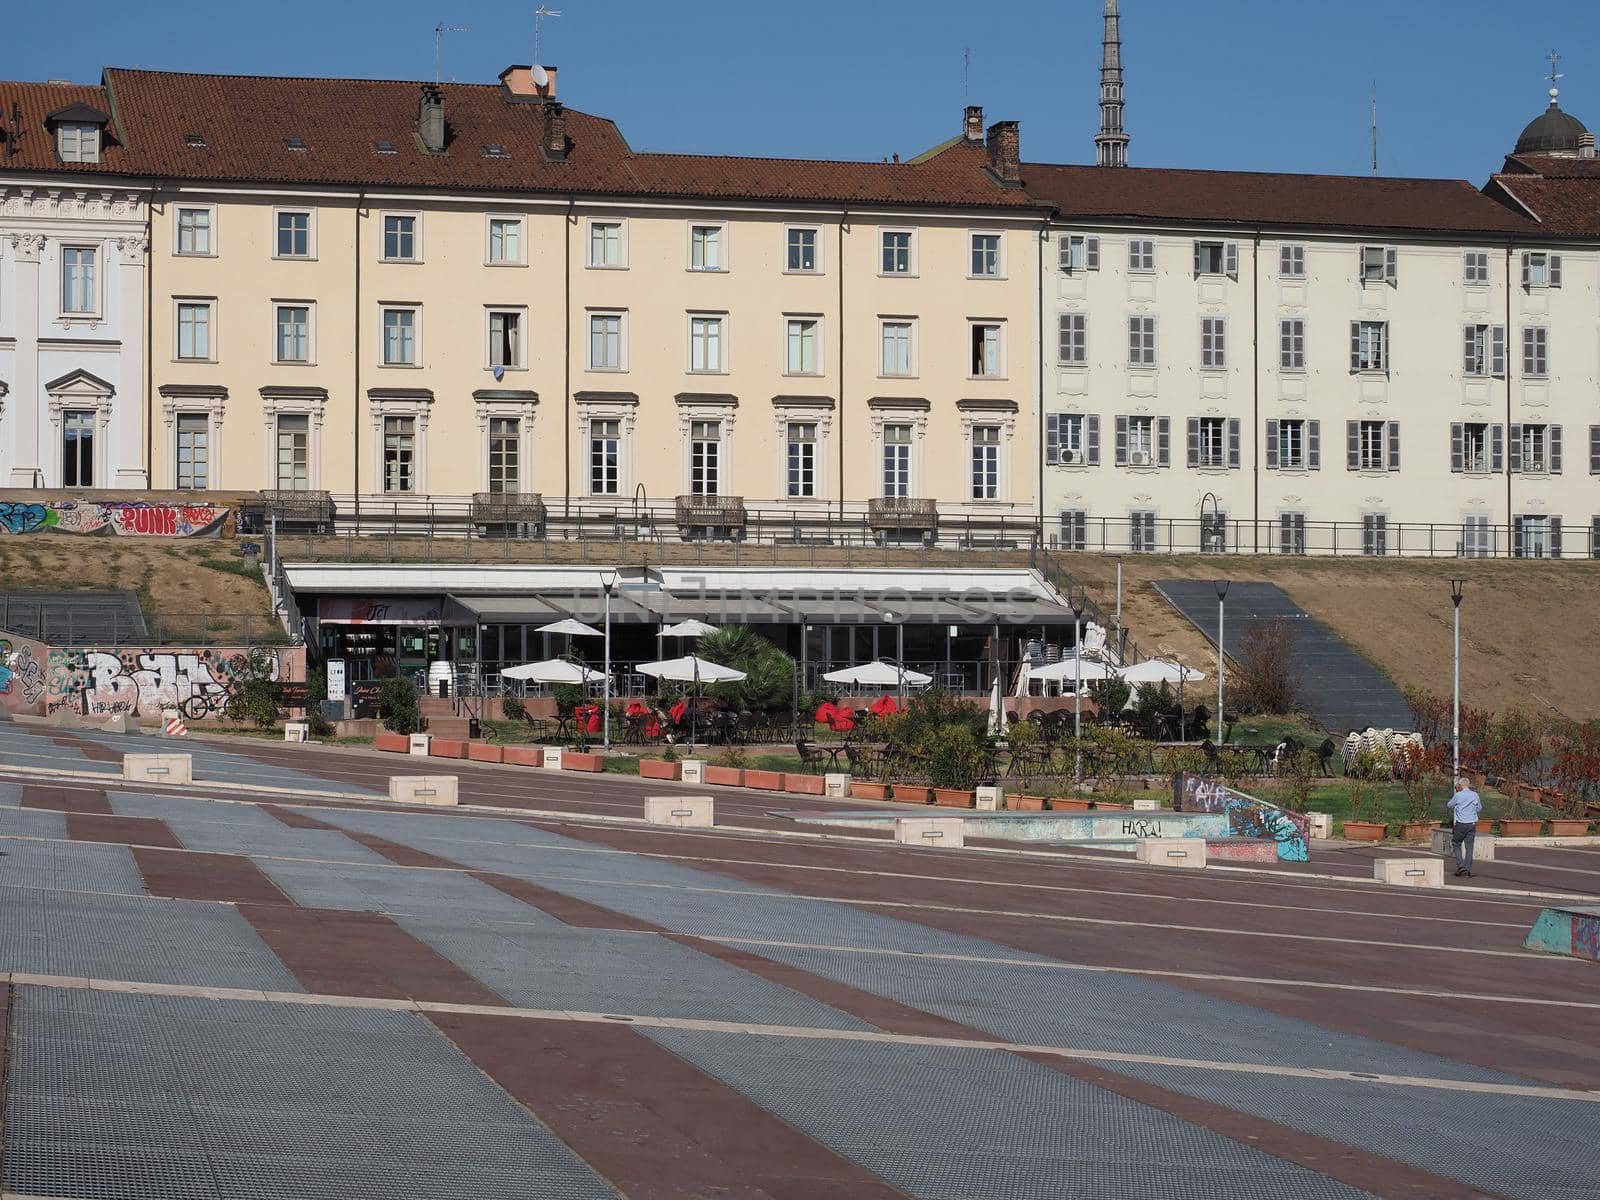 Piazzale Valdo Fusi square in Turin by claudiodivizia